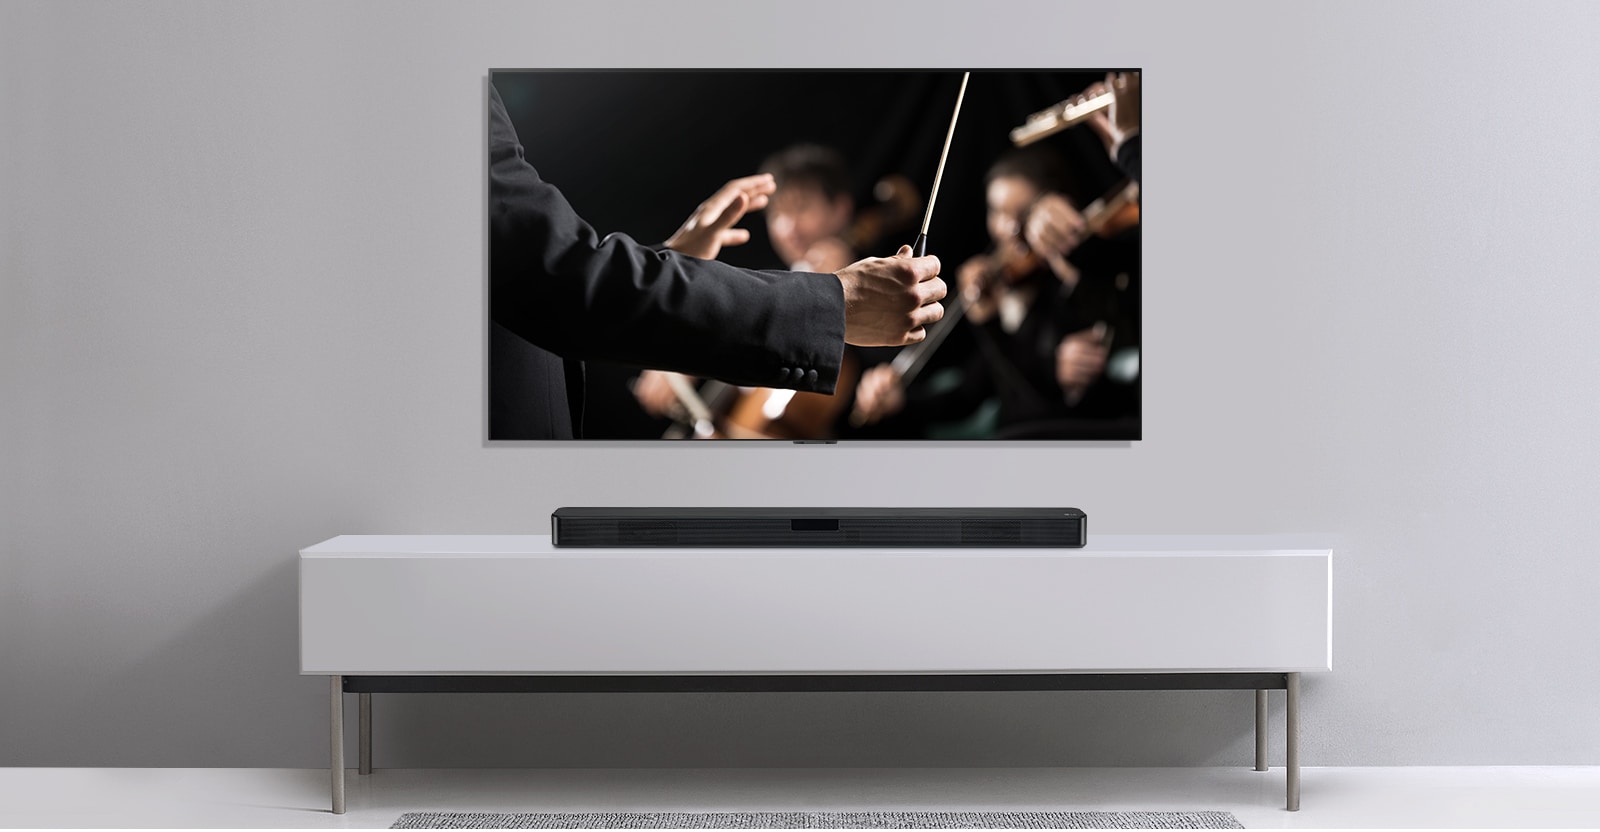 TV được hiển thị trên một bức tường màu xám và Loa thanh LG đặt bên dưới trên kệ màu xám. TV hiển thị một nhạc trưởng đang điều khiển dàn nhạc.